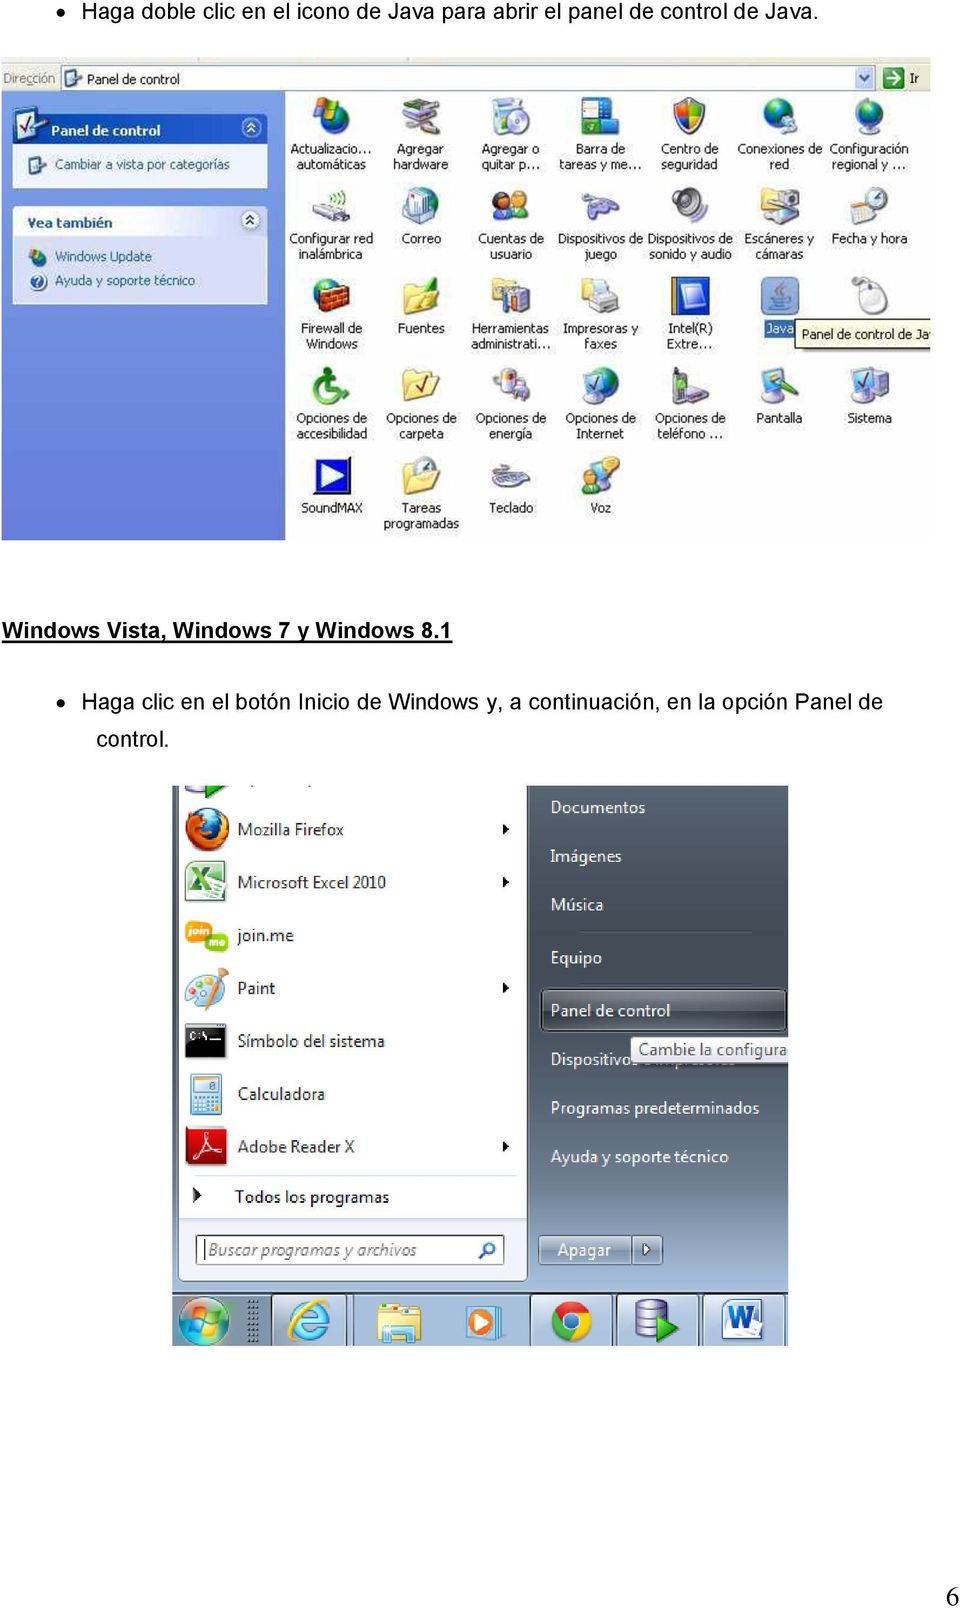 Windows Vista, Windows 7 y Windows 8.